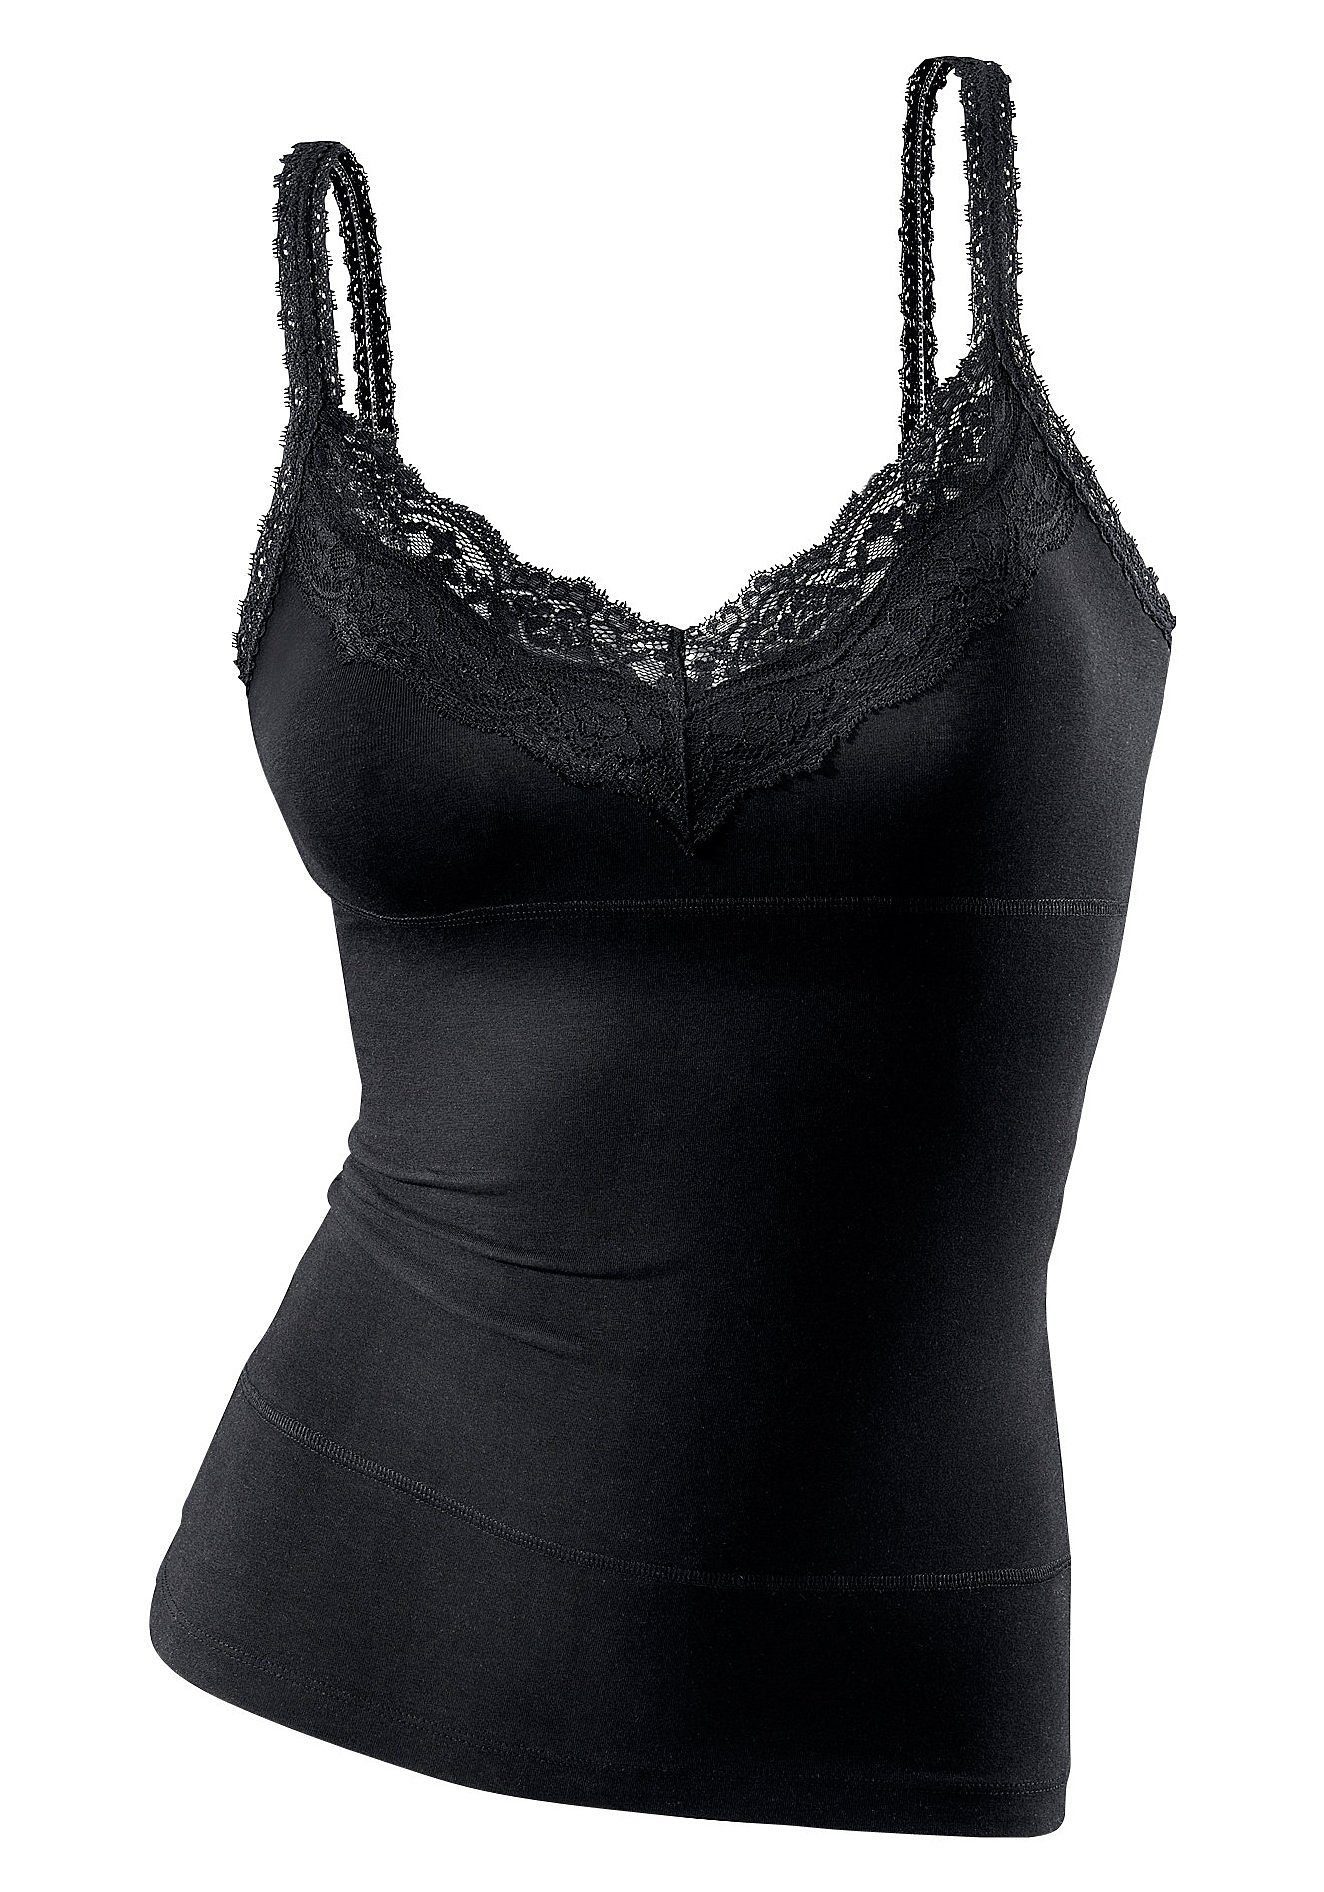 LASCANA Unterhemd mit bodyforming Effekt, schwarz elastische Baumwolle, Spaghettiträger-Top